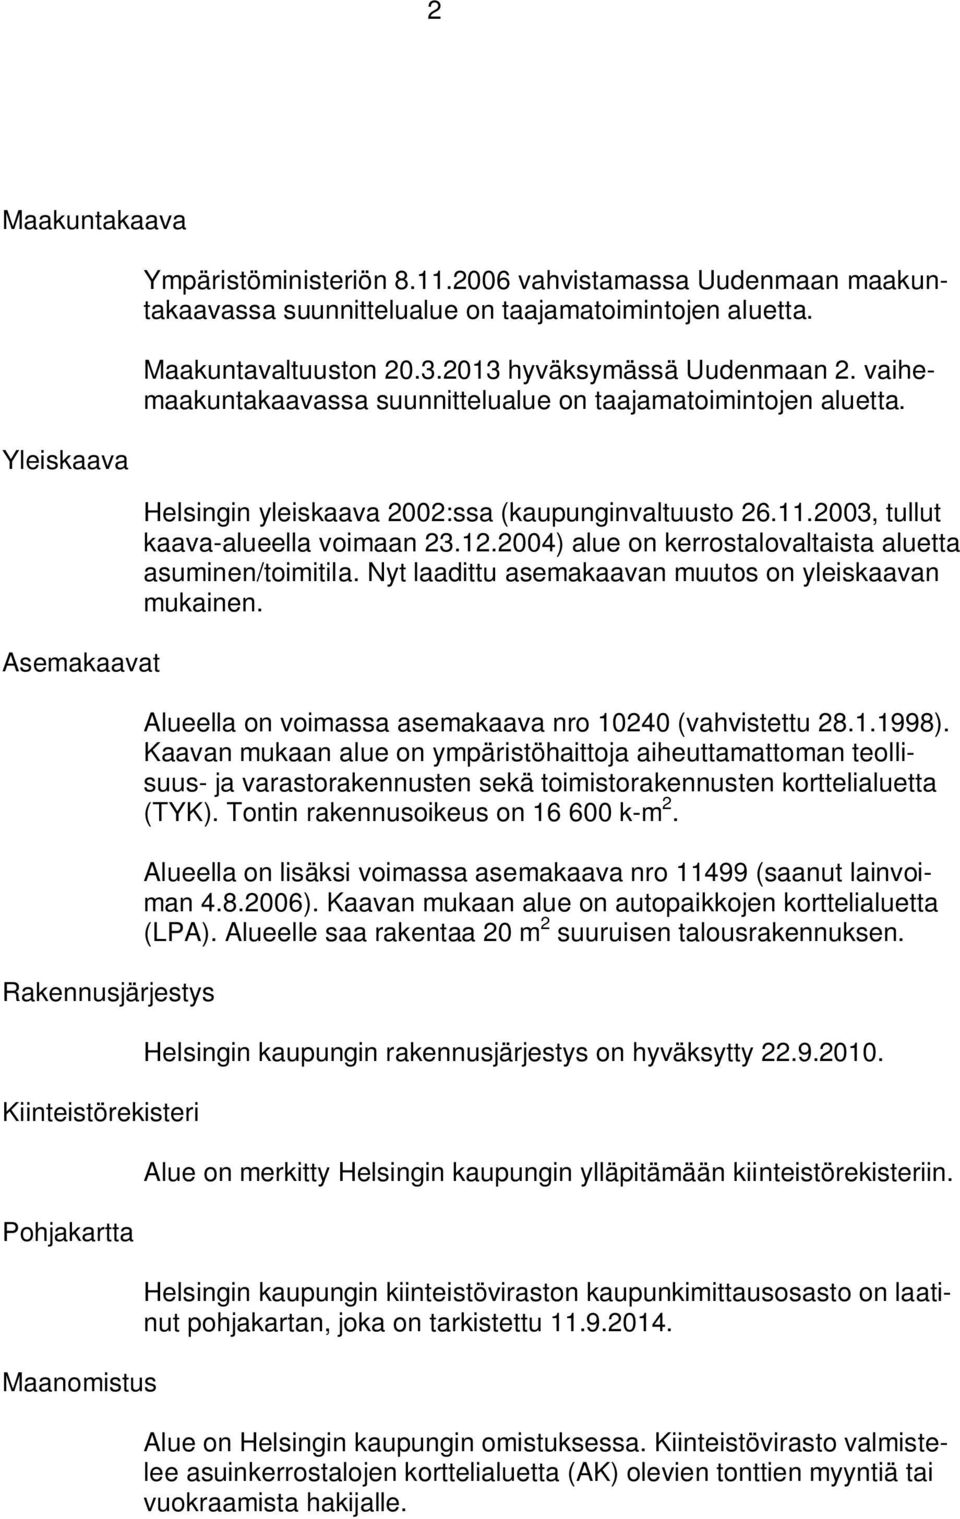 vaihemaakuntakaavassa suunnittelualue on taajamatoimintojen aluetta. Helsingin yleiskaava 2002:ssa (kaupunginvaltuusto 26.11.2003, tullut kaava-alueella voimaan 23.12.